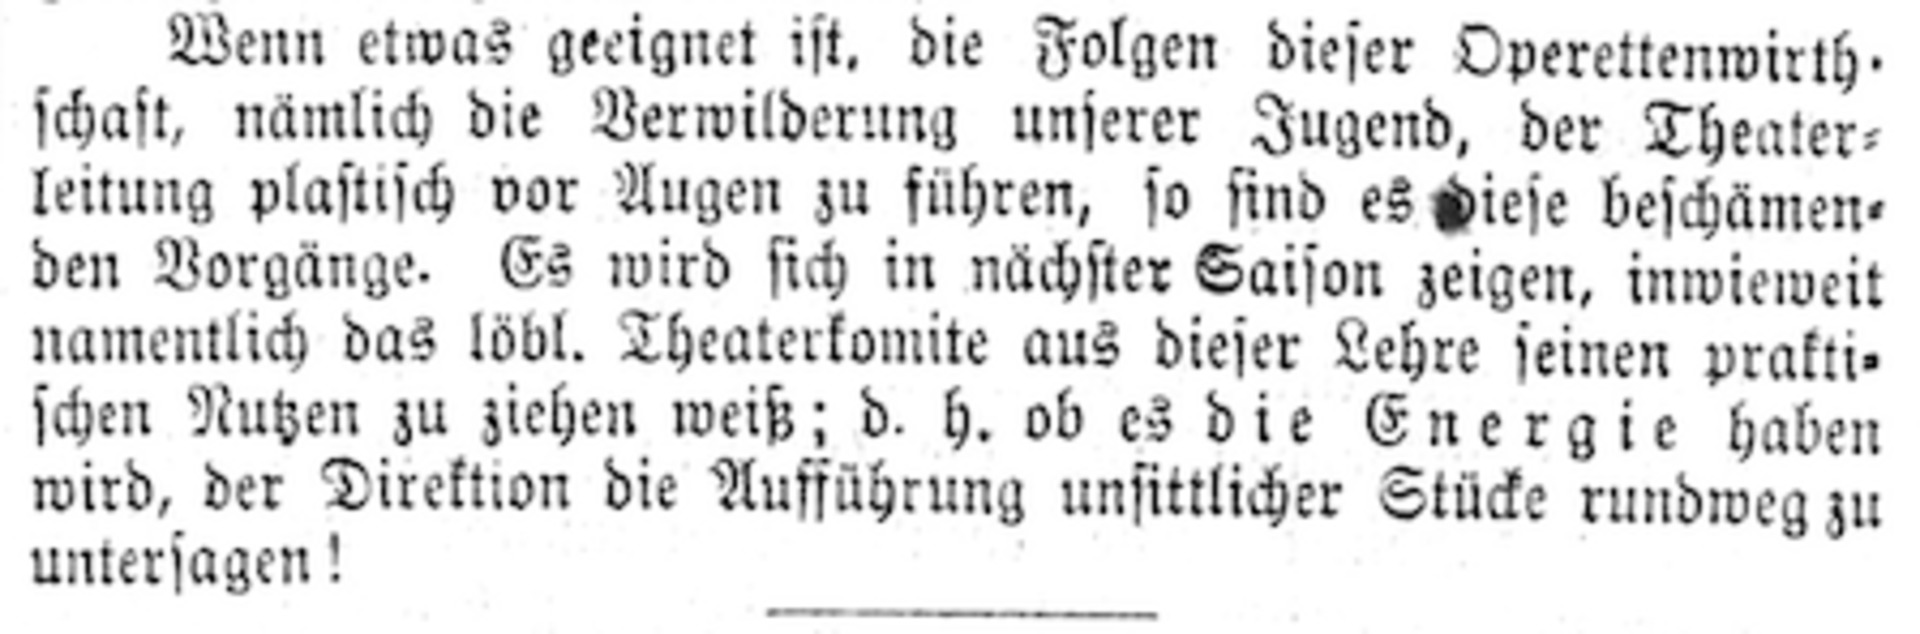 Theaterkritik von Gerold Vogel vom 13.05.1877 in der Neuen Zürcher Zeitung